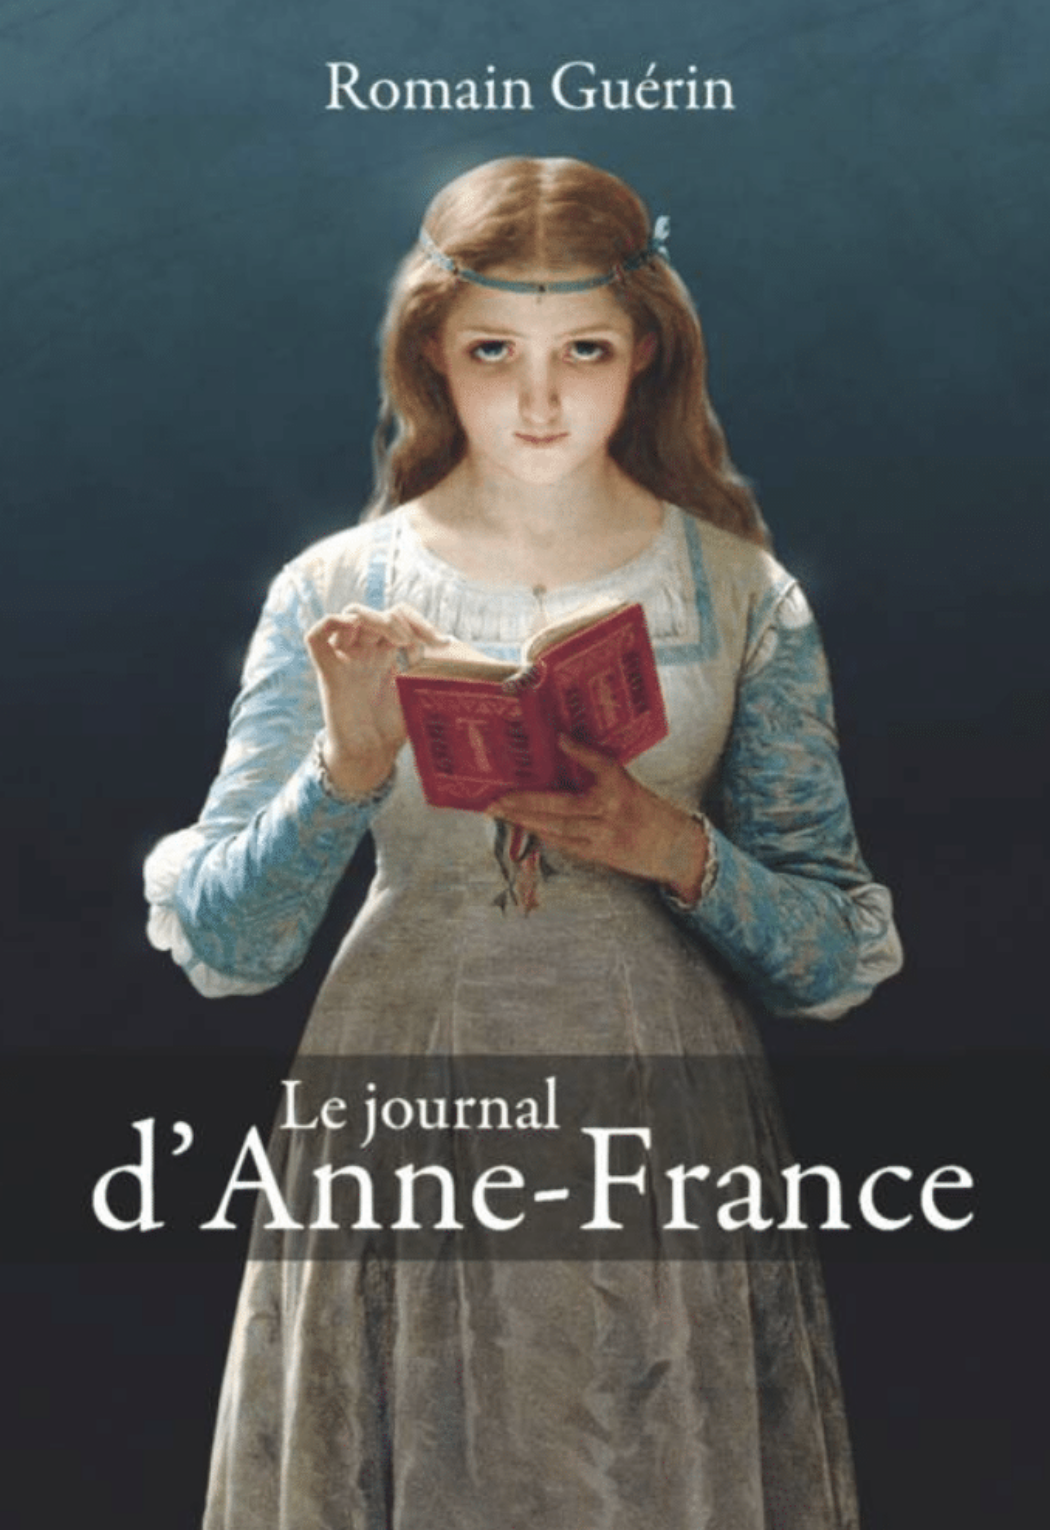 Le journal d’Anne-France